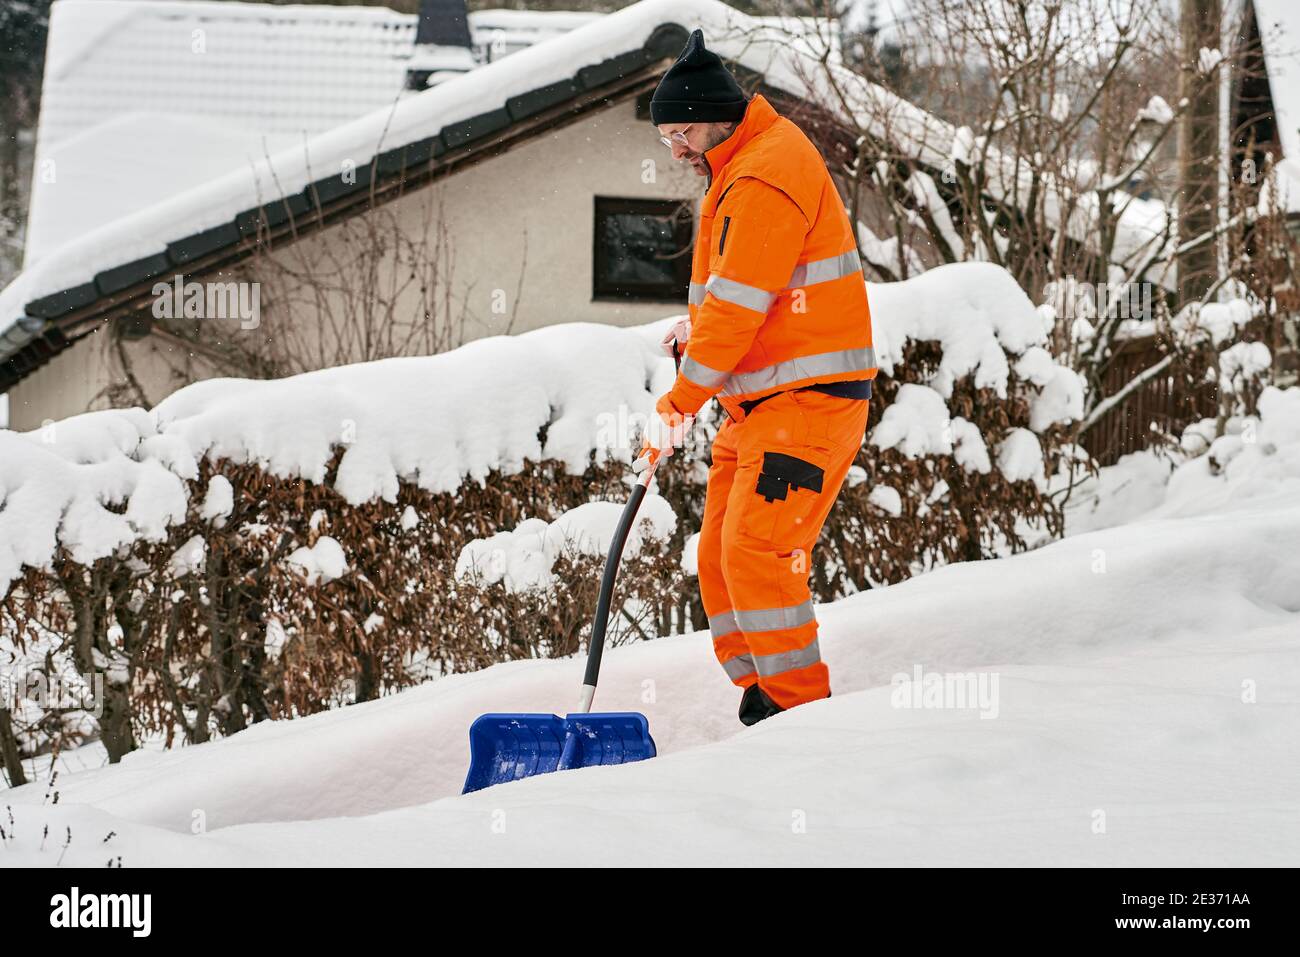 Operaio di servizio comunale in uniforme con una pala libera la neve in inverno Foto Stock